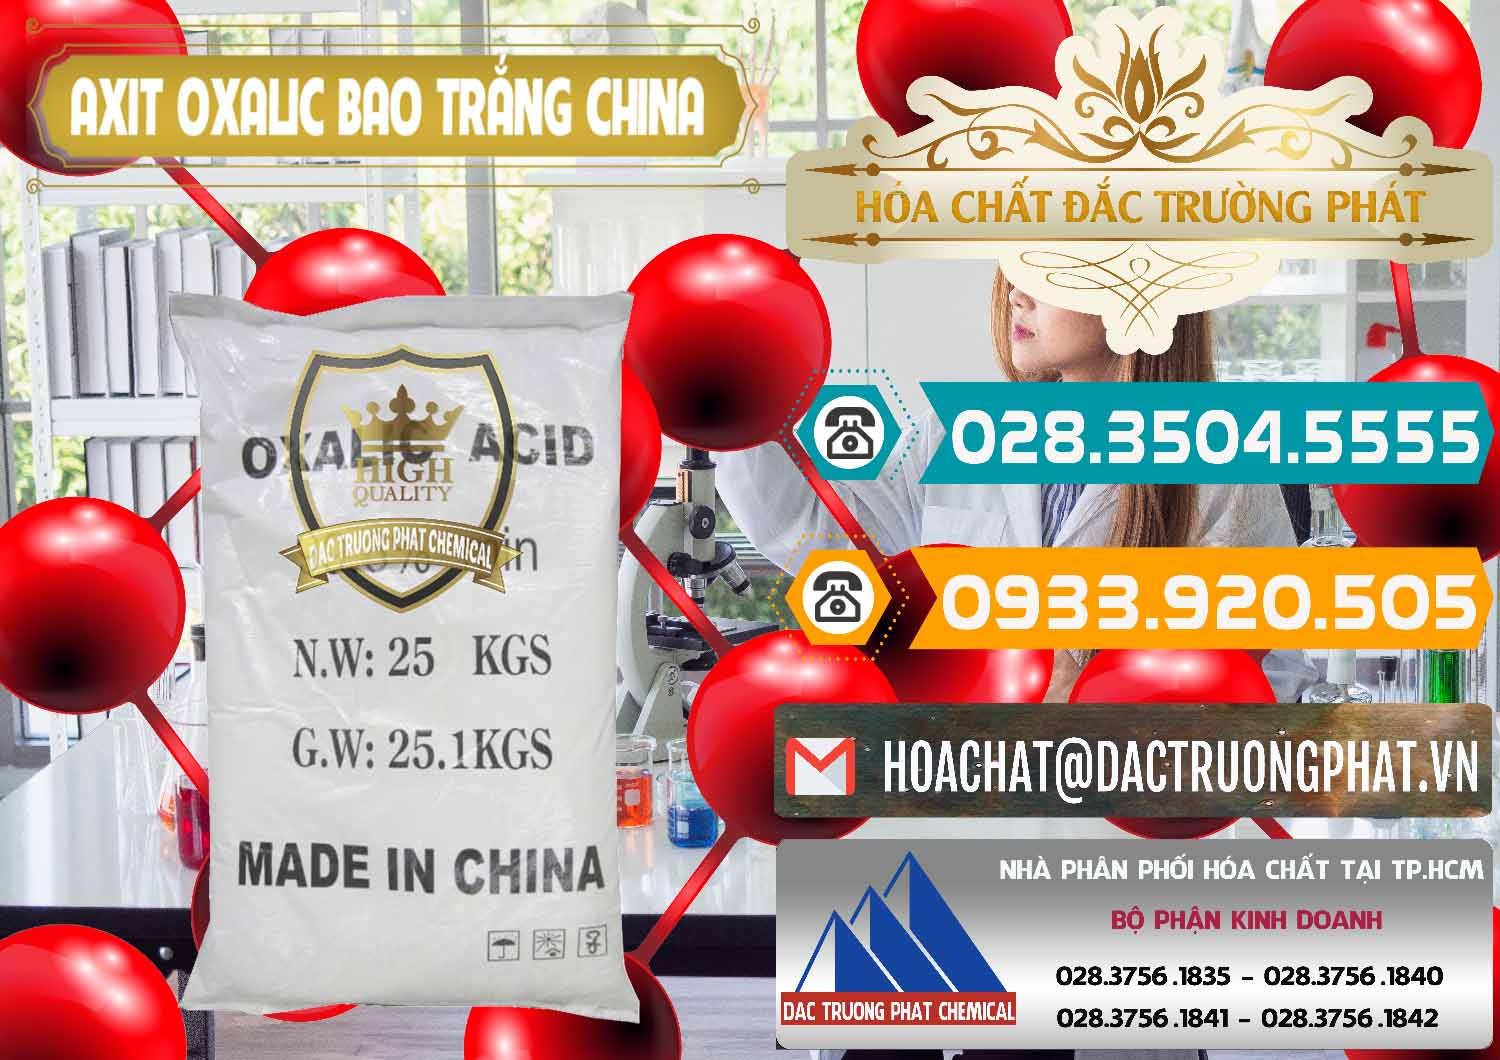 Đơn vị bán - cung ứng Acid Oxalic – Axit Oxalic 99.6% Bao Trắng Trung Quốc China - 0270 - Đơn vị cung cấp và phân phối hóa chất tại TP.HCM - congtyhoachat.vn